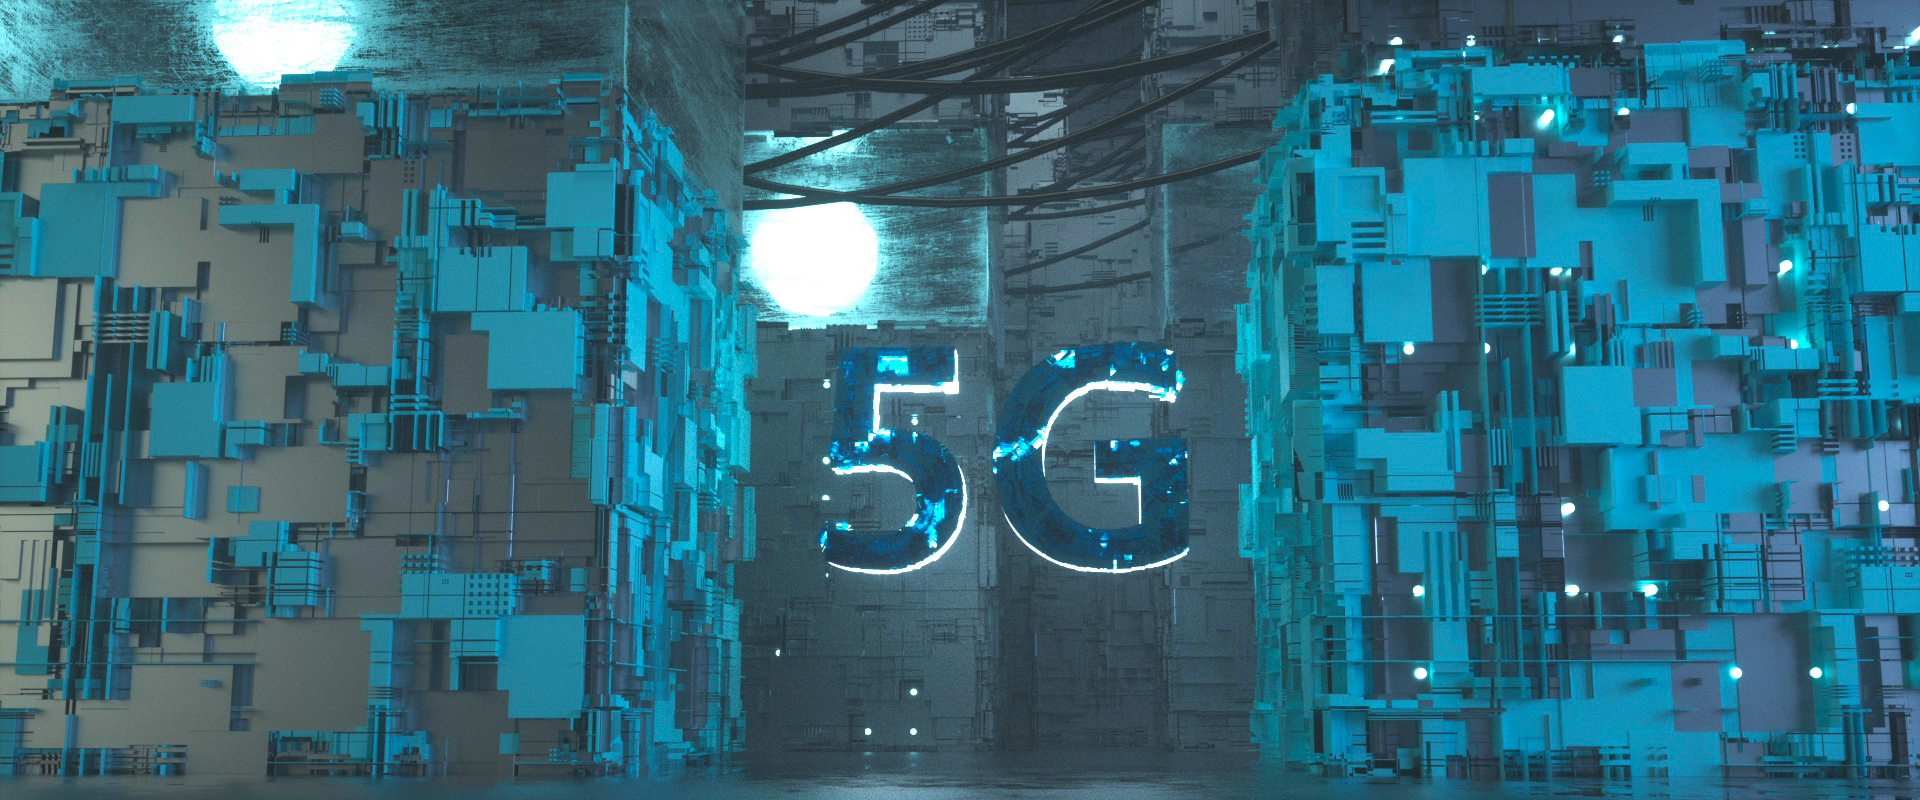 5G未来科技电路板通讯酷炫风海报banner设计009.jpg